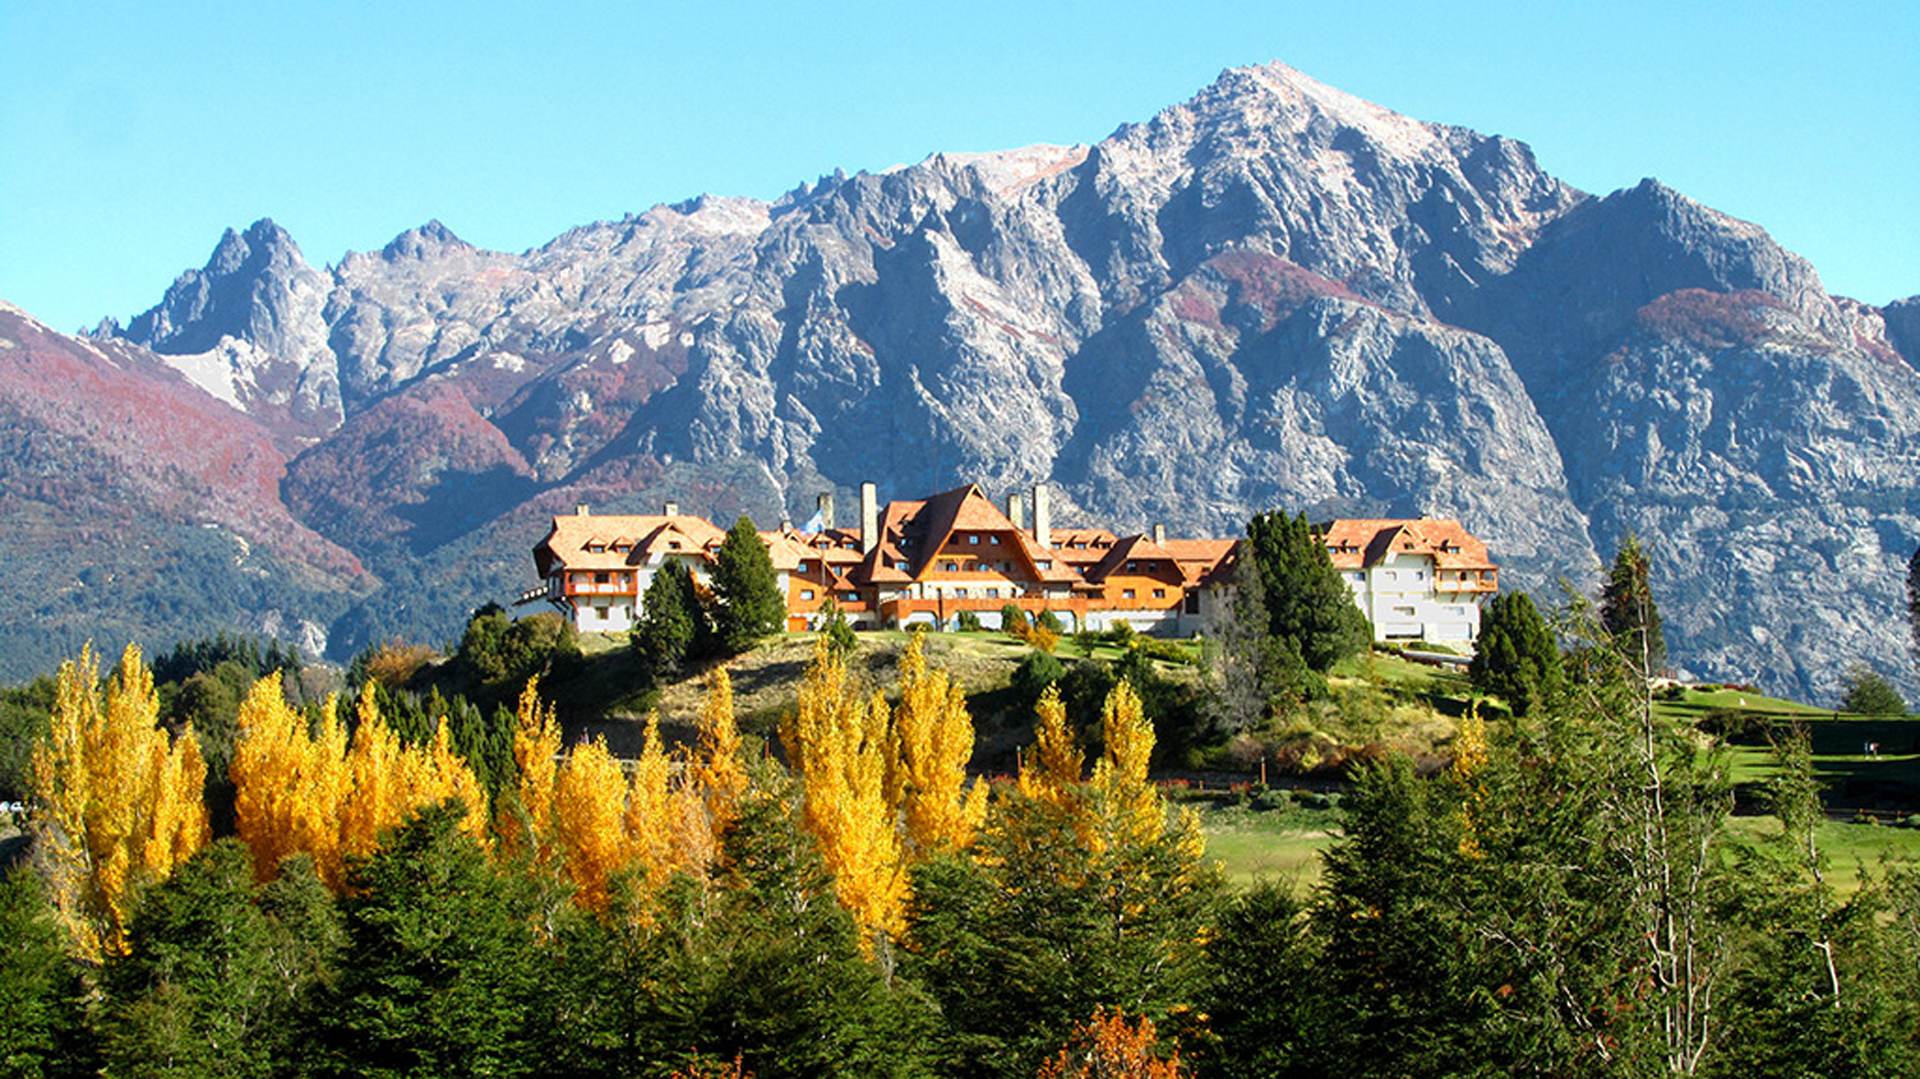 Programa Full - San Martin de Los Andes + Villa La Angostura + Bariloche